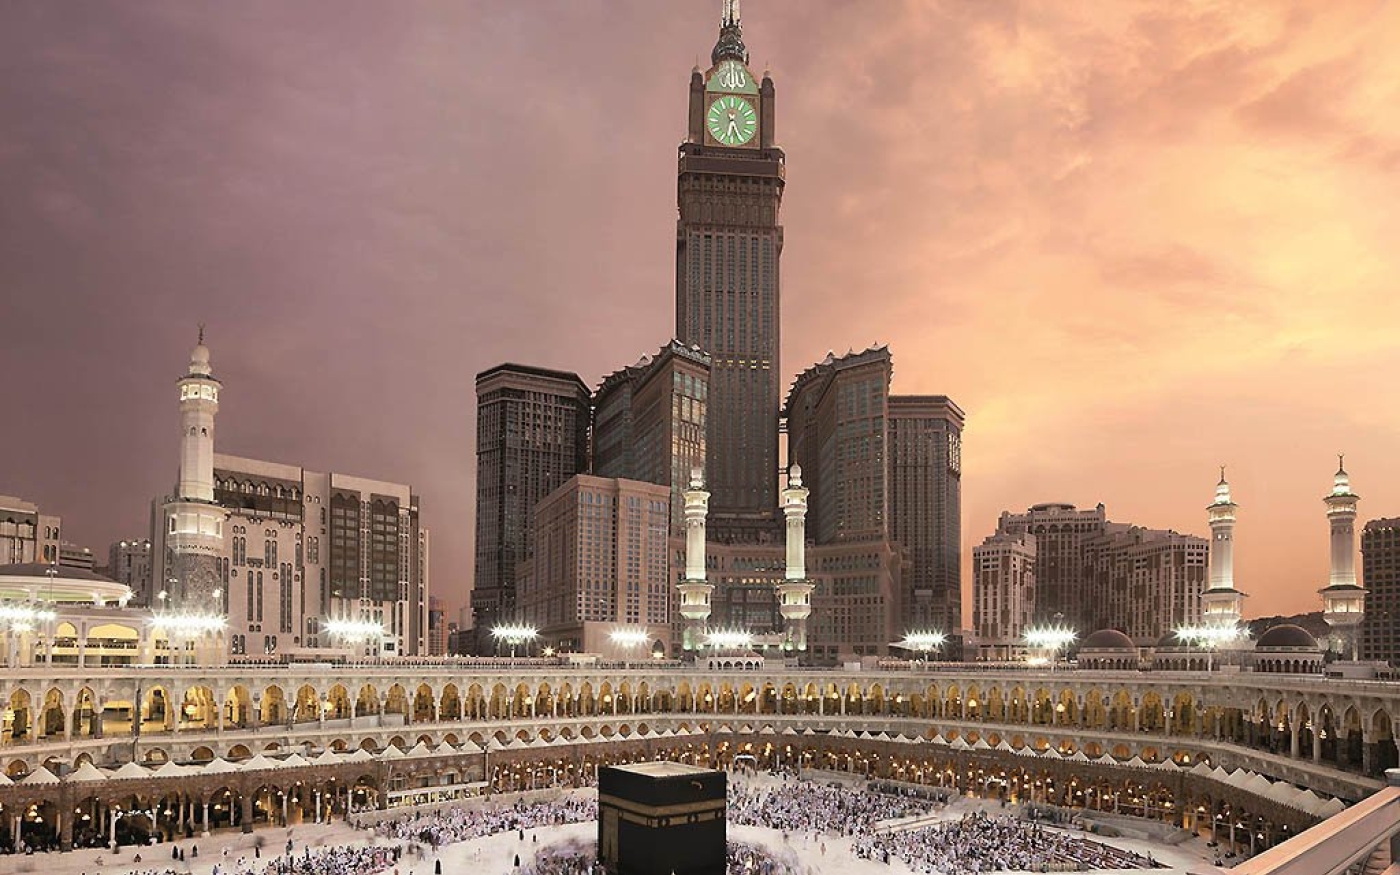 L’hôtel Fairmont est situé dans la Tour de l’horloge qui surplombe la Grande Mosquée de La Mecque (document fourni)